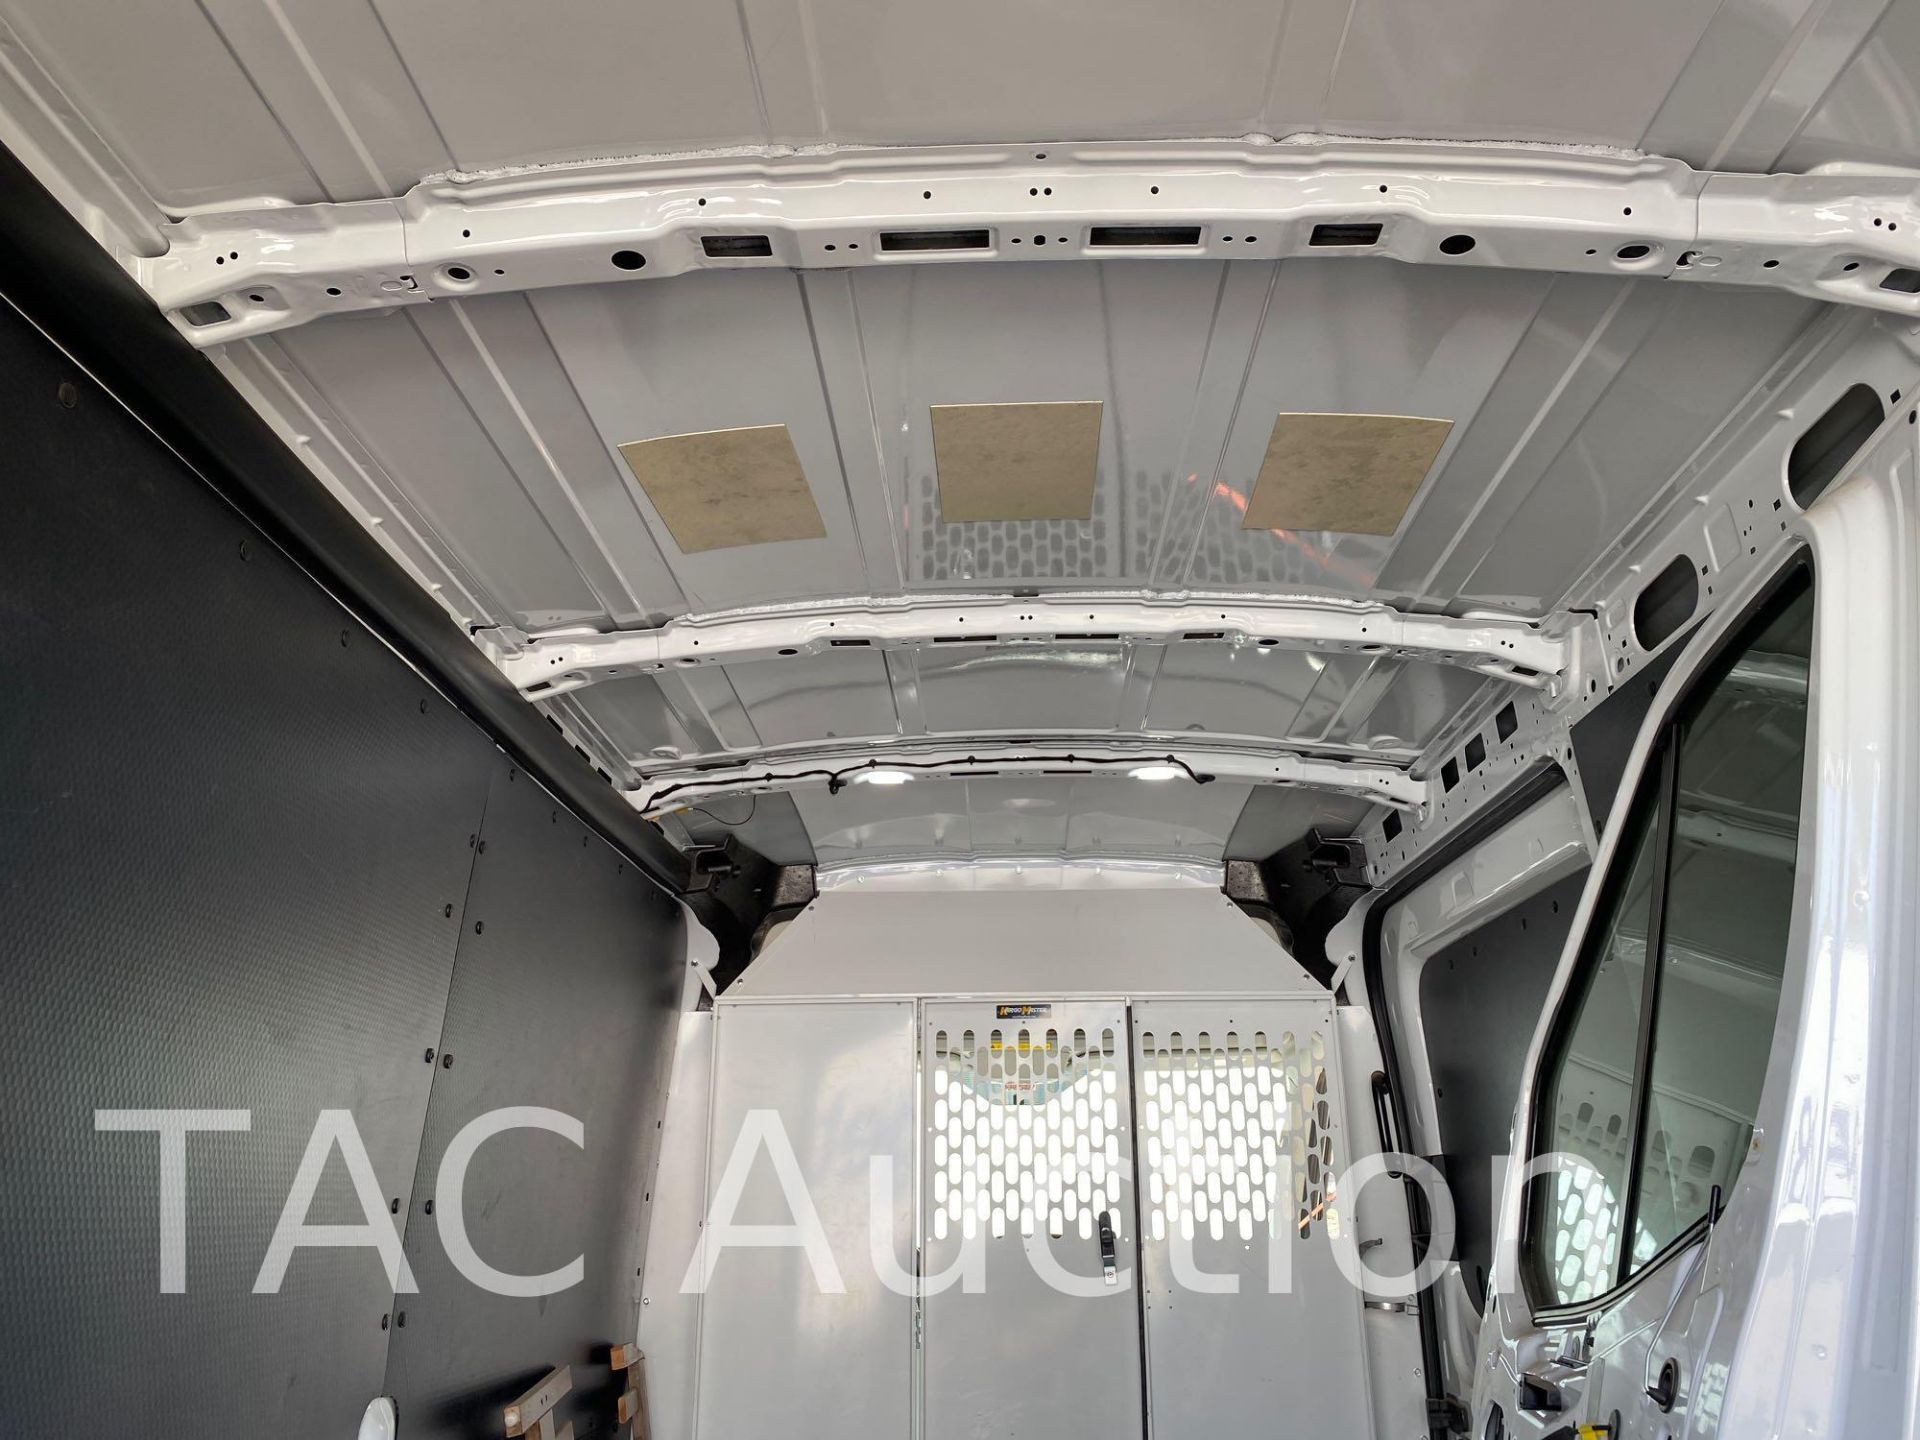 2019 Ford 150 Transit Cargo Van - Image 27 of 43